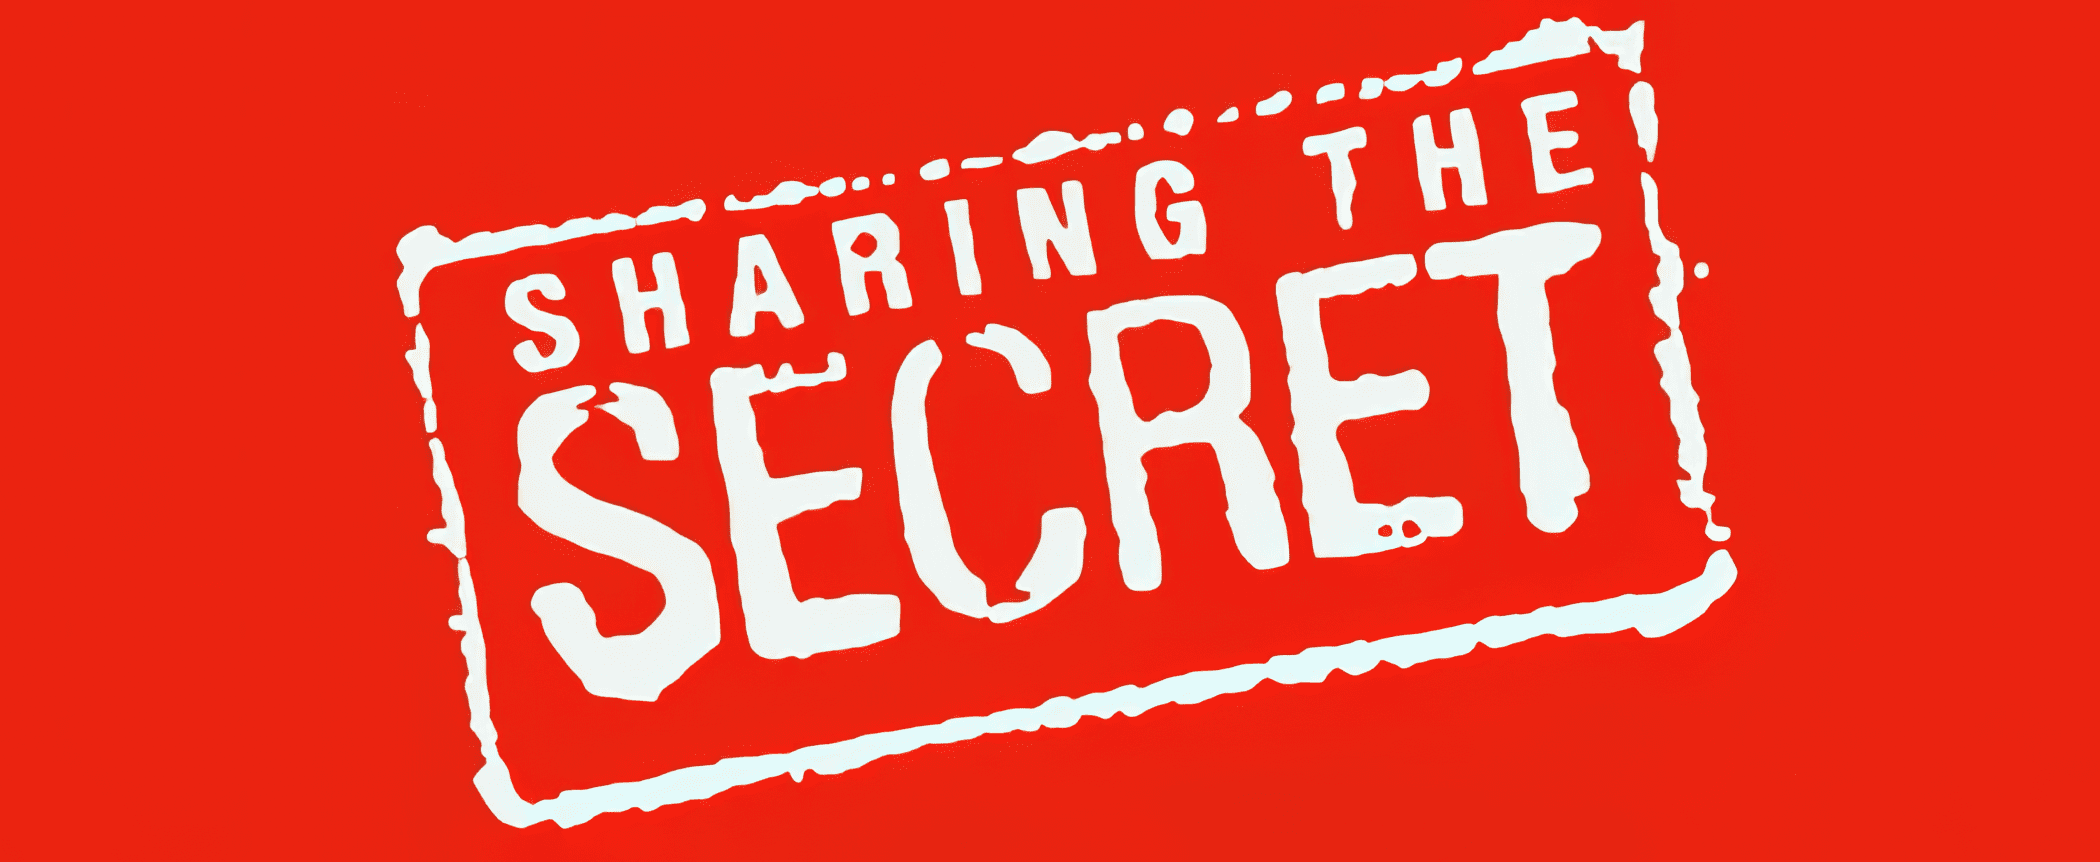 sharing-the-secret-topaz-enhance